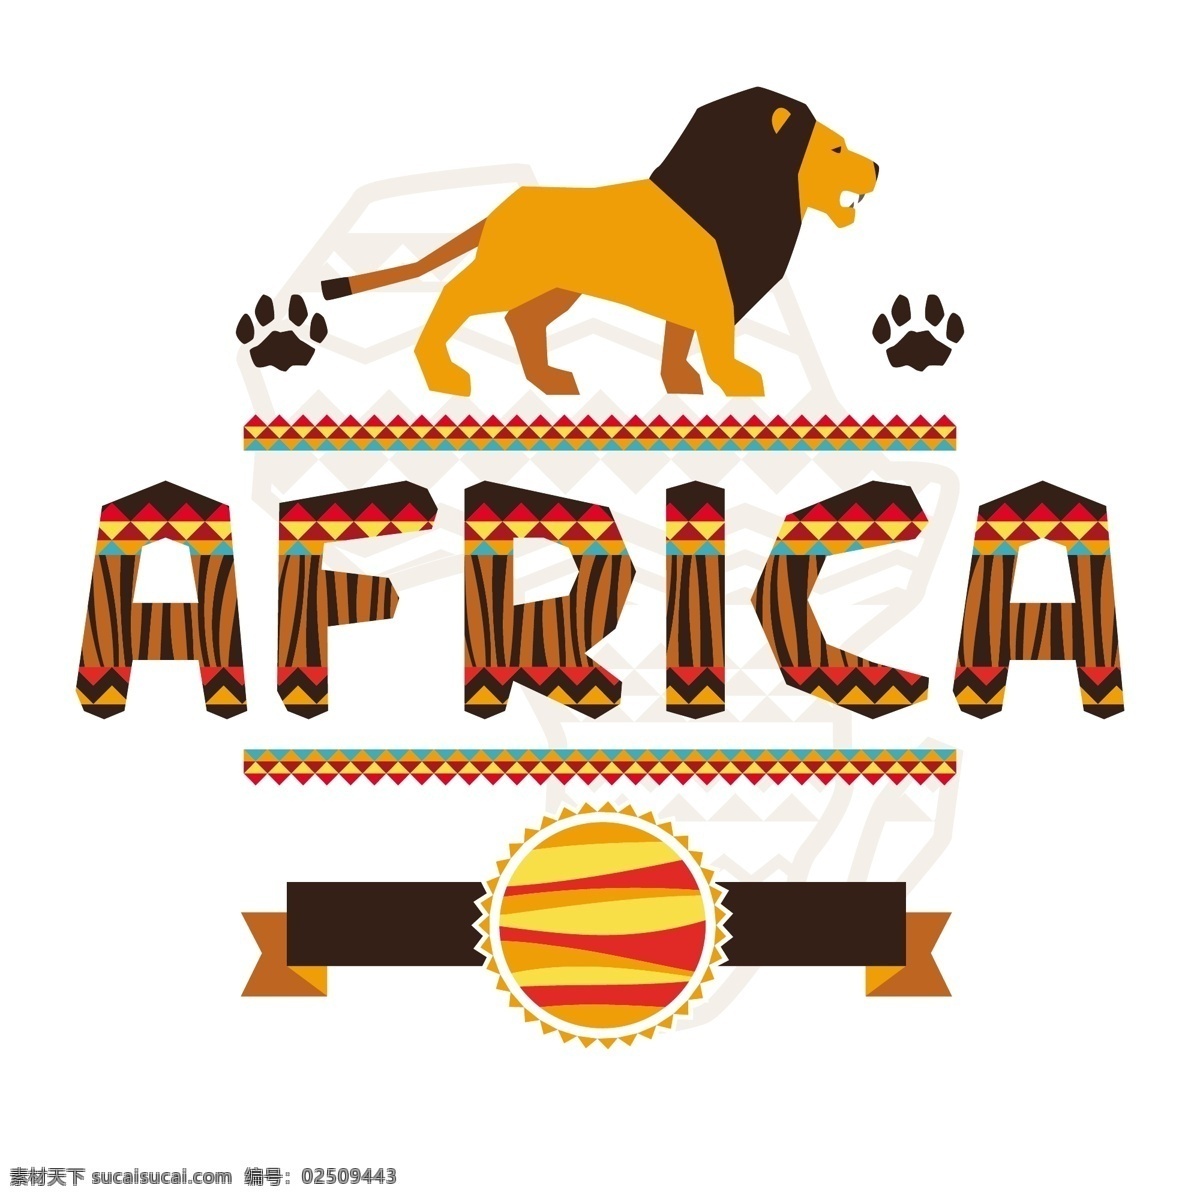 非洲狮子 非洲雄狮 非洲 非洲大草原 非洲设计 南非 背景底纹 底纹边框